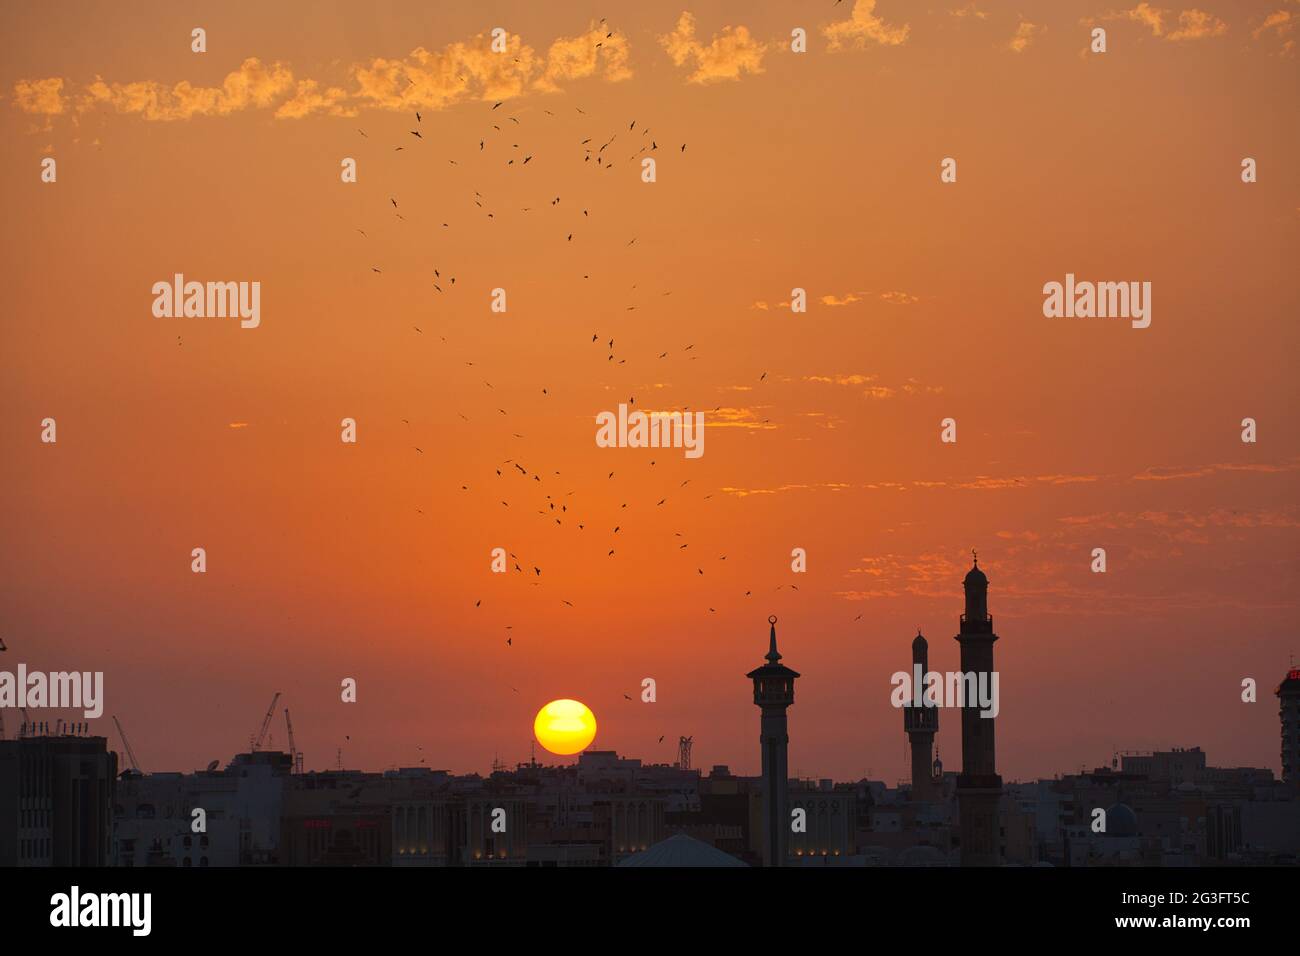 Uno skyline della città di Dubai al tramonto con tre minareti in silhouette e un grande gregge di uccelli contro il cielo arancione. Il sole che scende Foto Stock